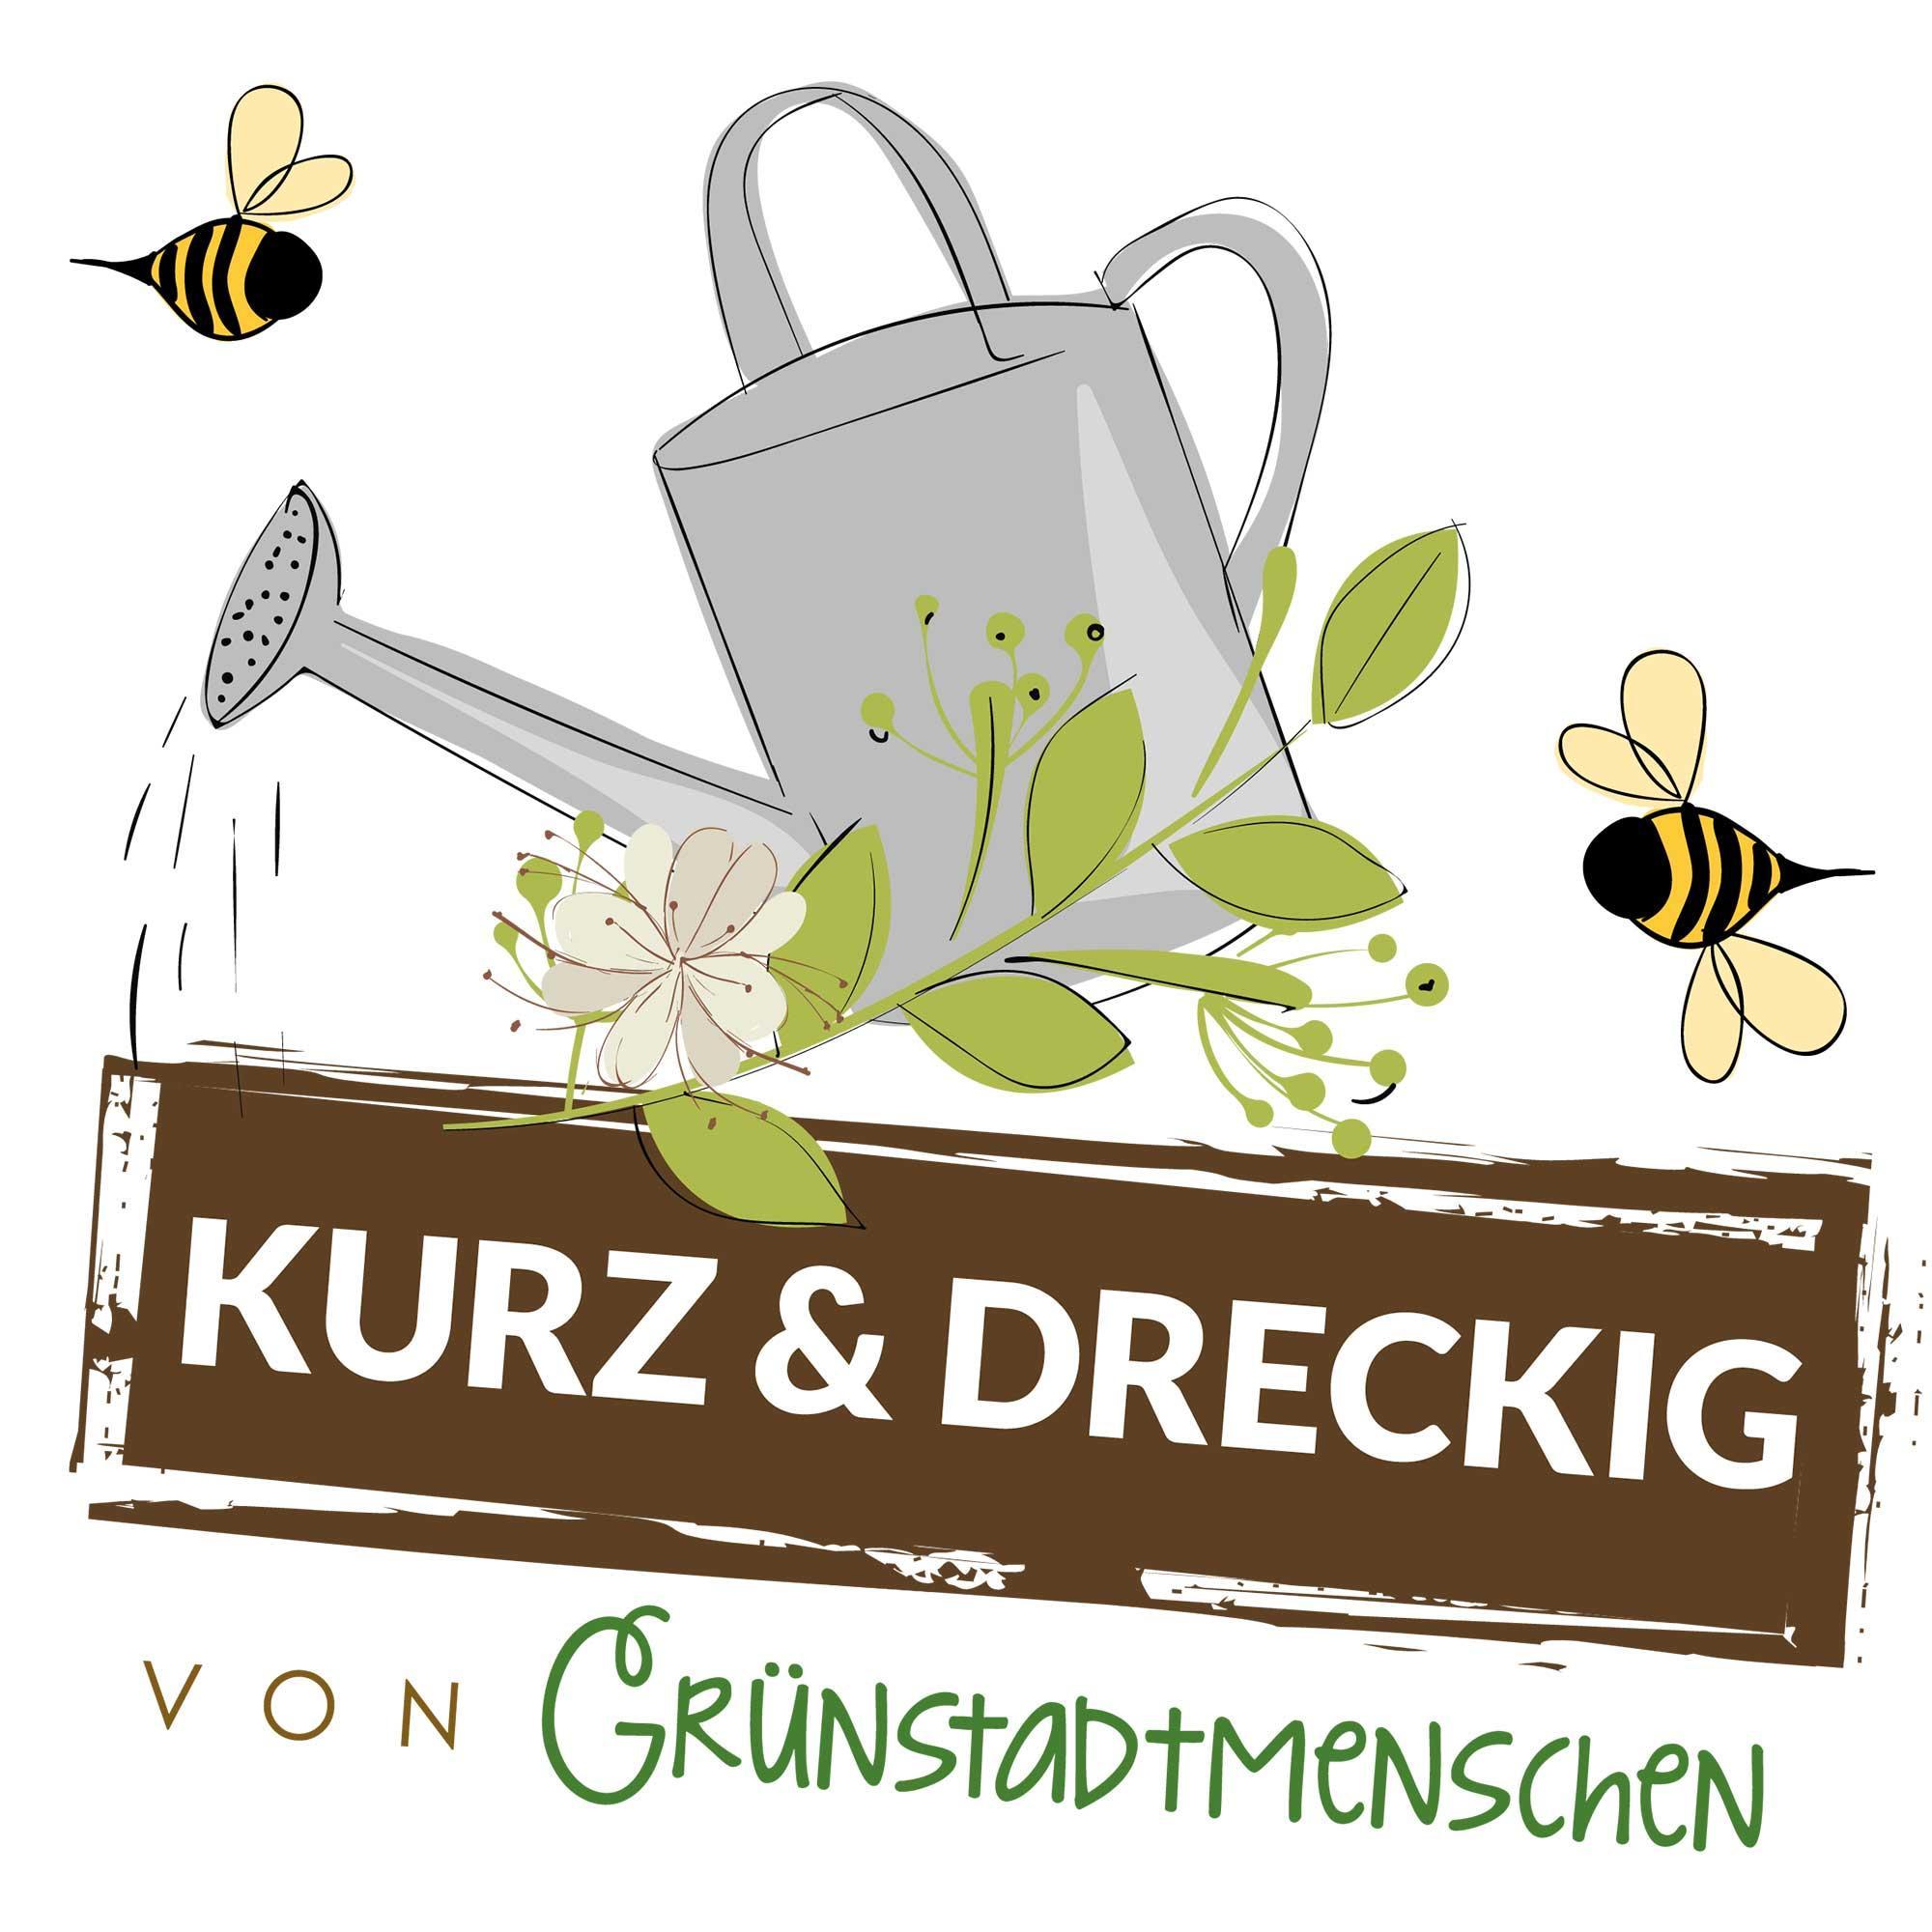 #120 Kurz & dreckig: Karinas Gartentipps für den Mai